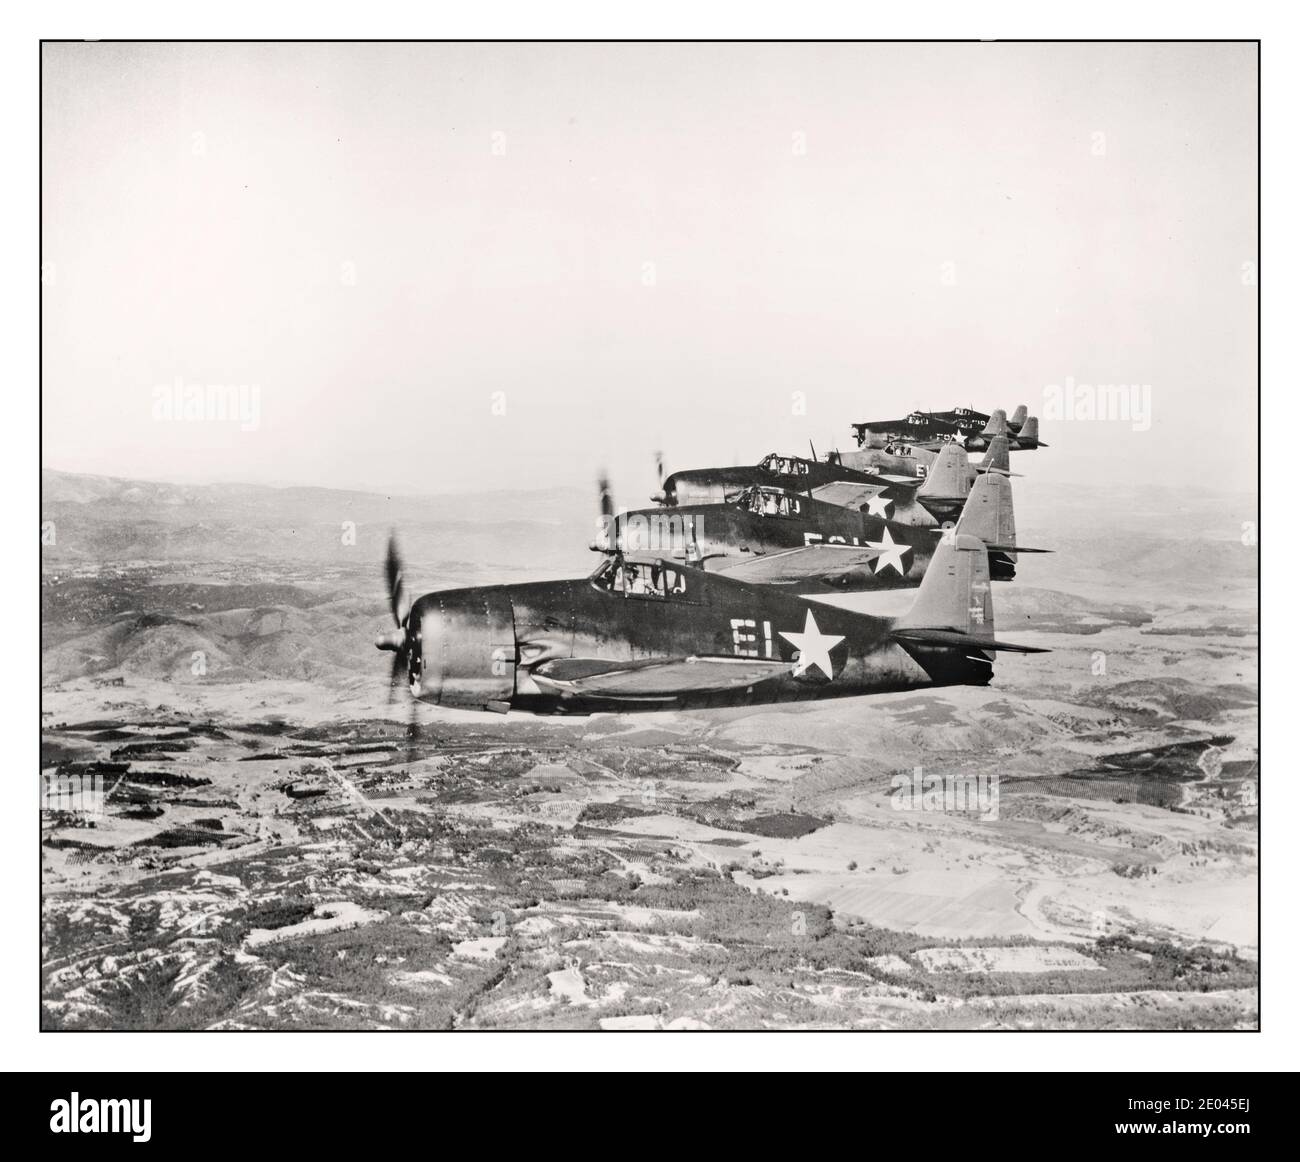 Archiv USAF Luftaufnahme von sieben Grumman Hellcat Flugzeugen im Flug erstellt / Veröffentlicht 1943. Flugzeuge--Vereinigte Staaten--1940-1950 - Weltkrieg, 1939-1945--Ausrüstung und Zubehör--amerikanische Luftaufnahmen--1940-1950. Offizielles US-Navy-Foto Stockfoto